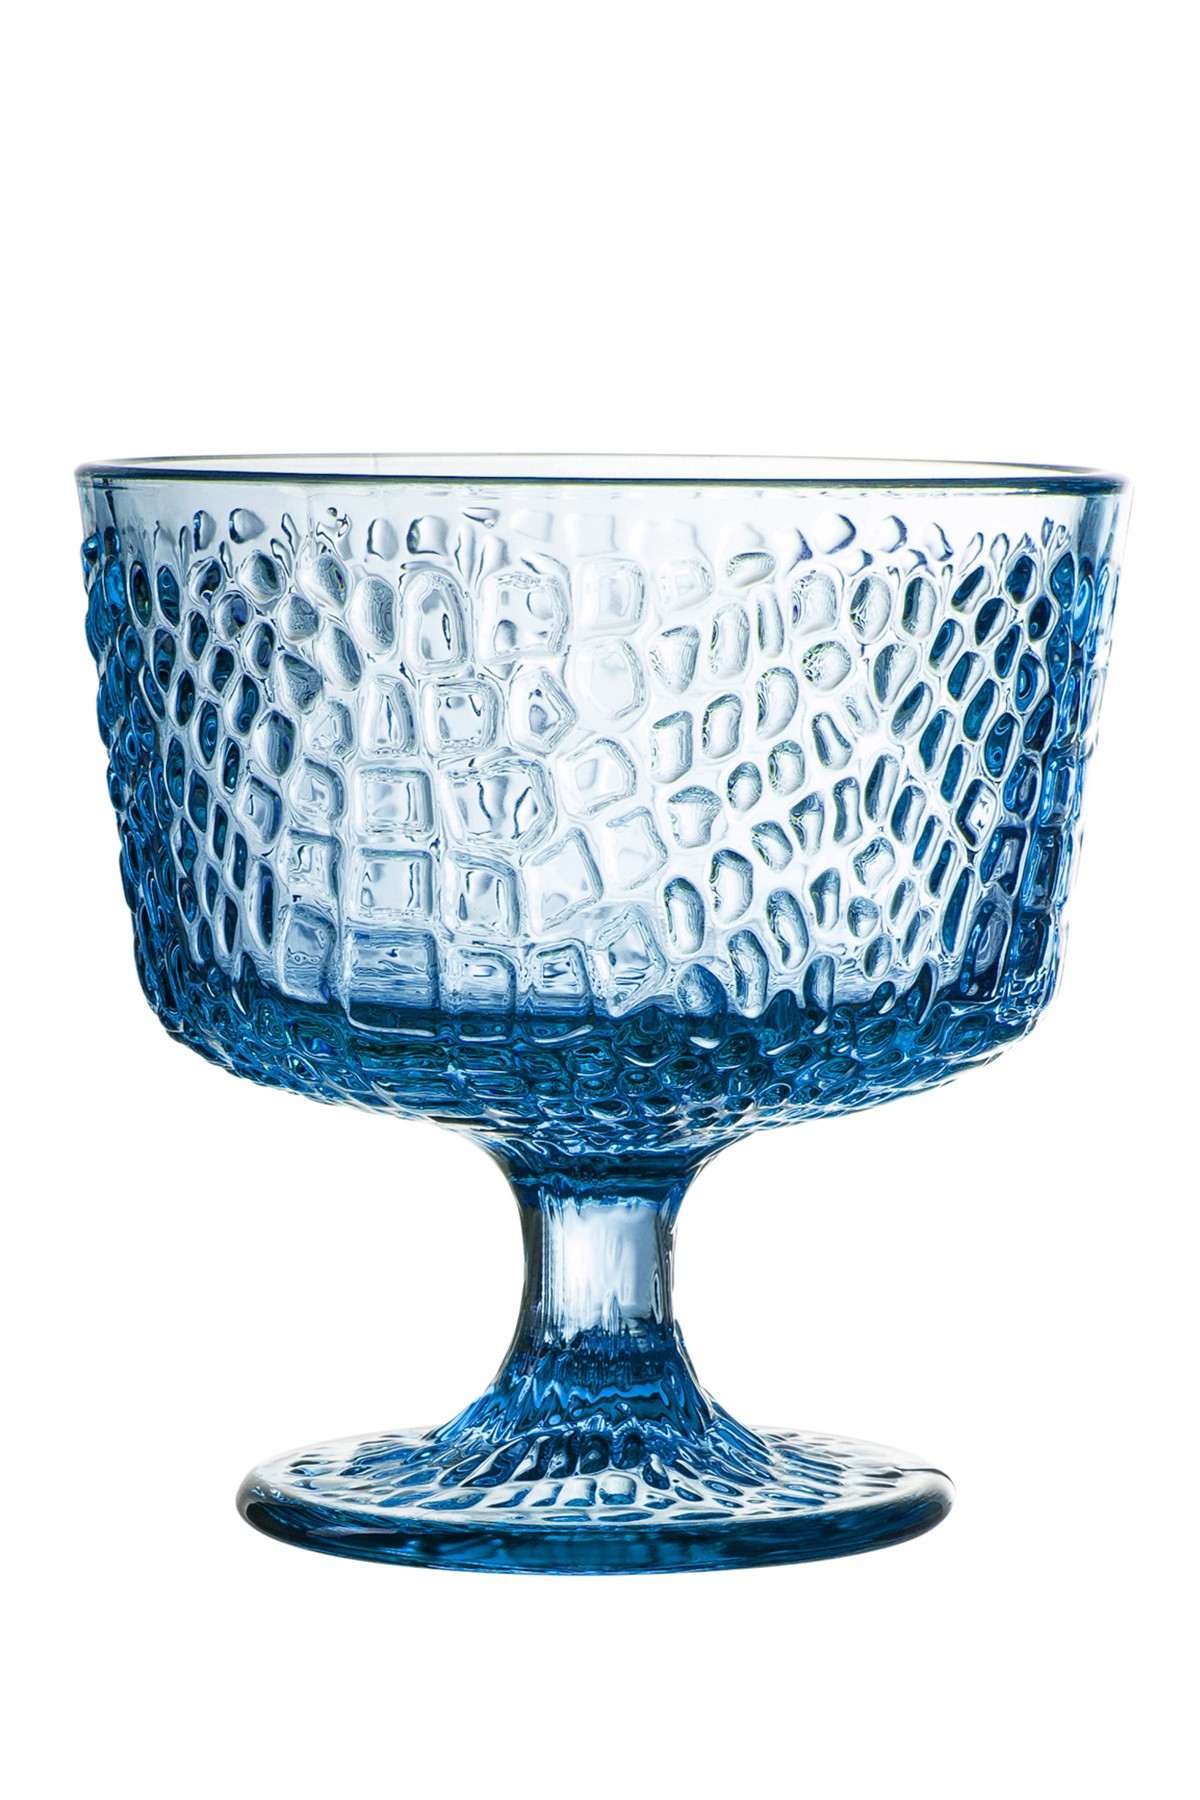 22 Unique Large Glass Pedestal Vase 2024 free download large glass pedestal vase of jay import blue bistro croc pedestal bowl set of 4 nordstrom rack within 8366712